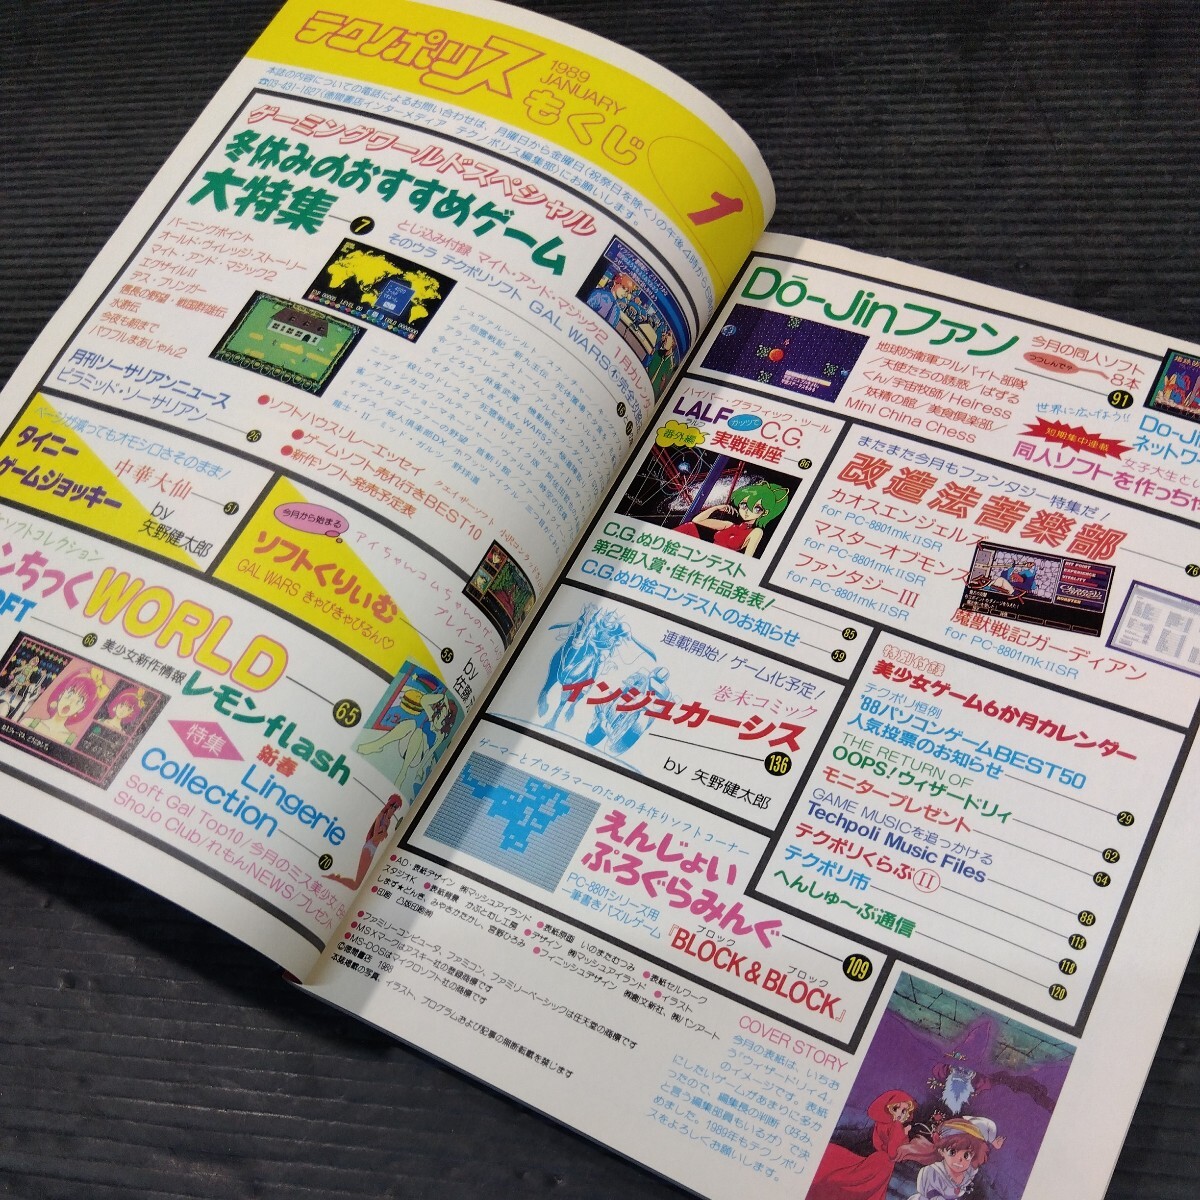 テクノポリス 1989年1月号 徳間書店 PCゲーム雑誌 貴重 月刊 ゲーム 情報誌 レトロ本 おすすめ ソフト 美少女 同人ソフト PC-8801の画像5